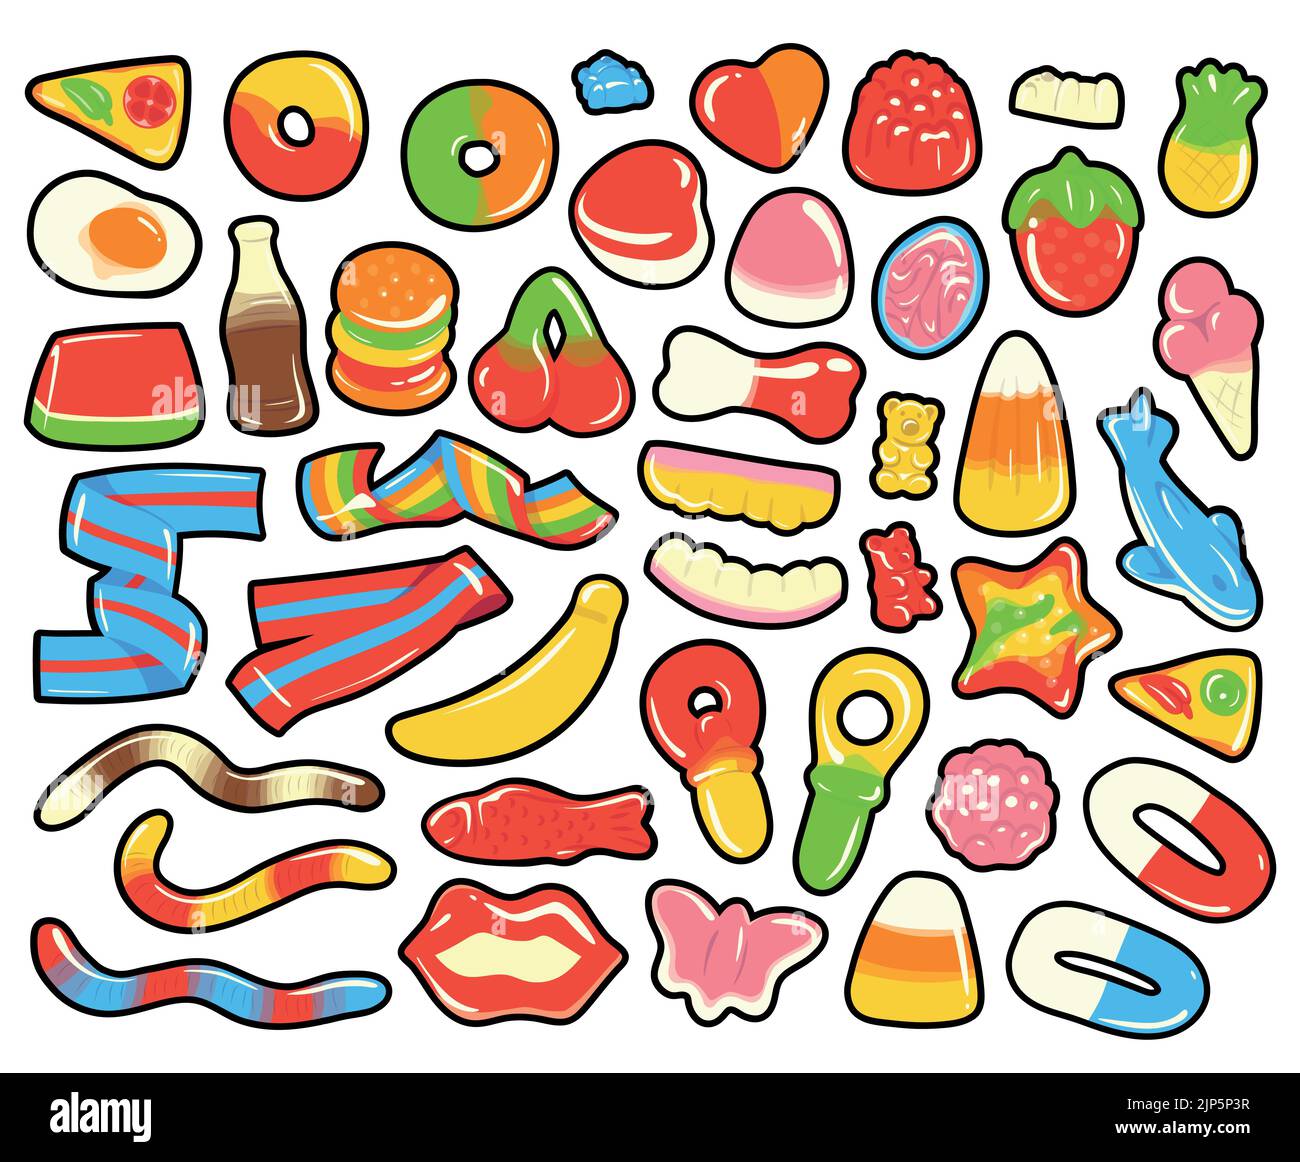 Collection de bonbons gélifiés et en gelée aux dessins animés colorés. Illustrations vectorielles dessinées à la main isolées. Illustration de Vecteur